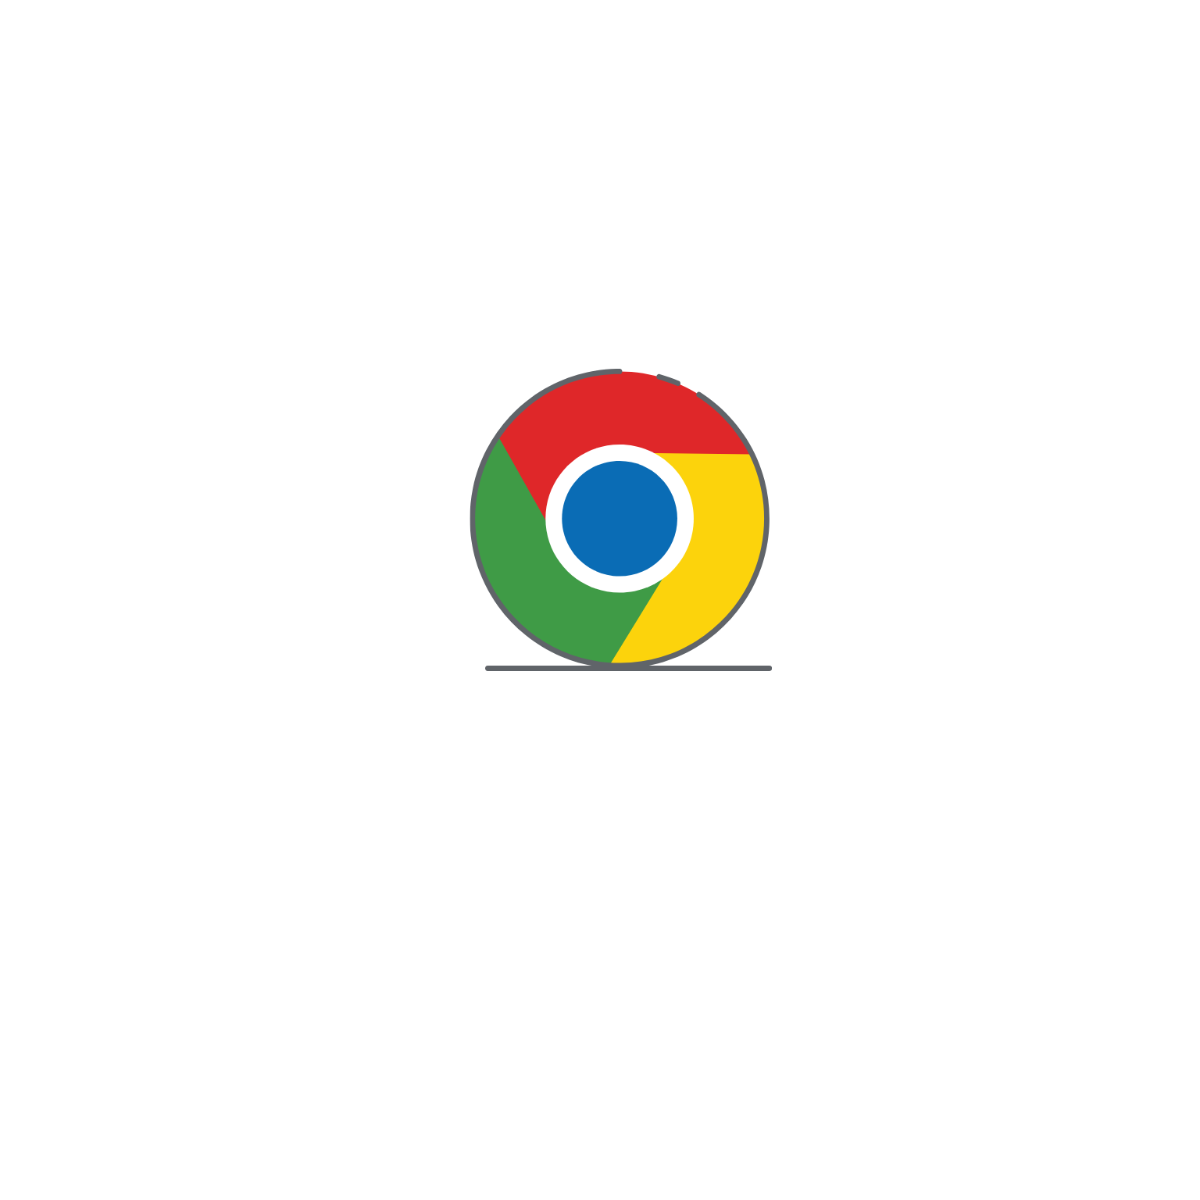 Chrome App